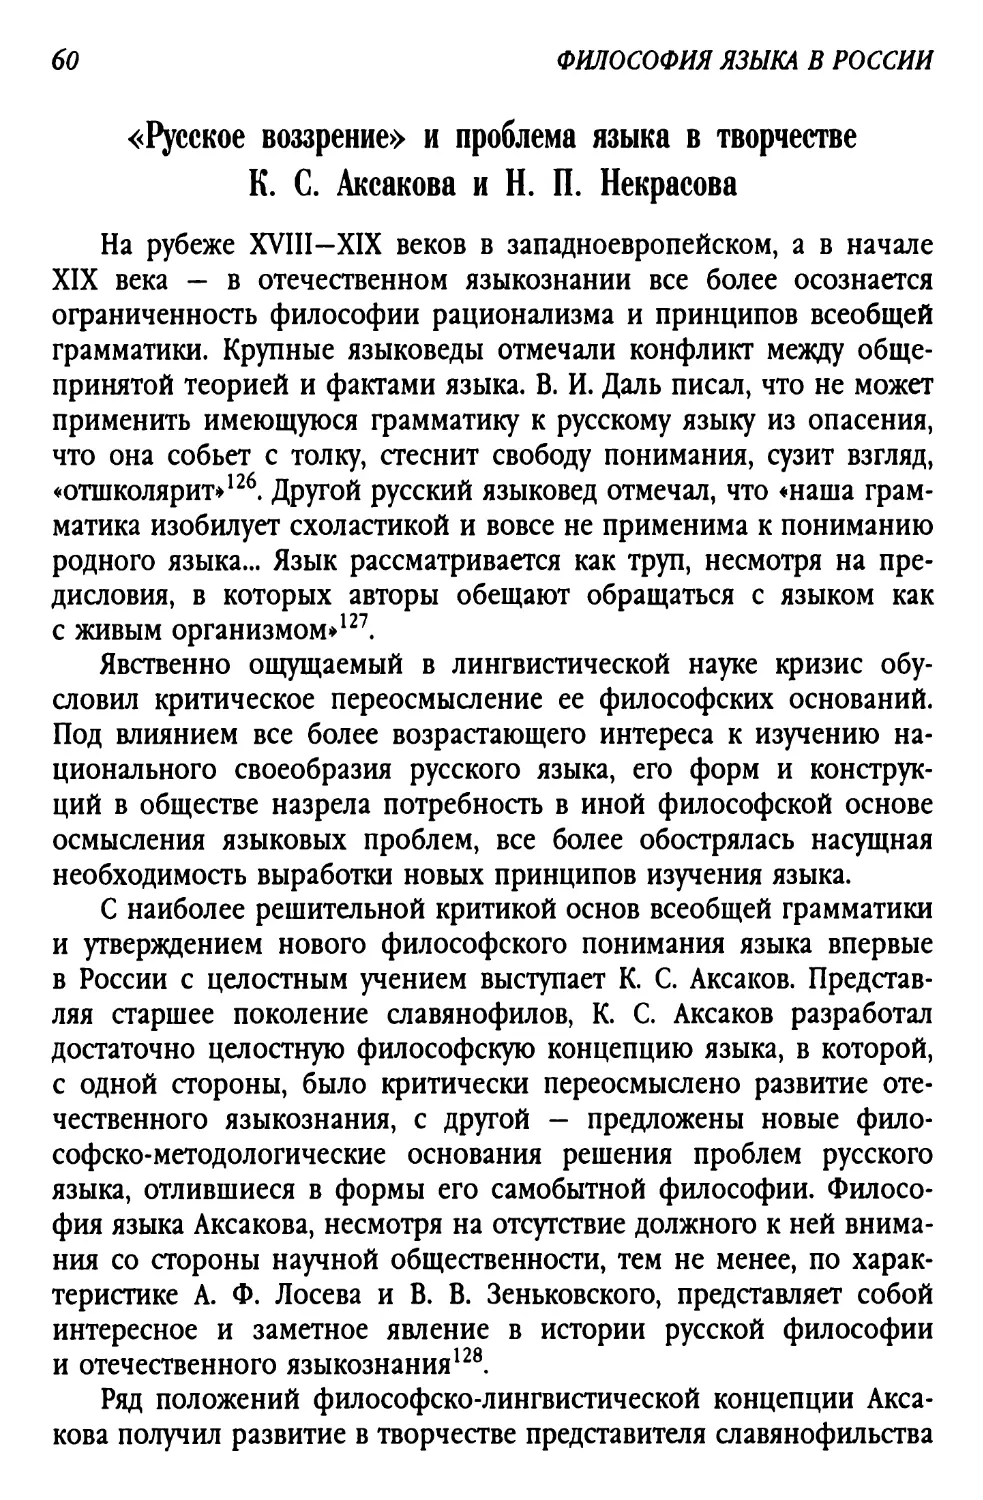 «Русское воззрение» и проблема языка в творчестве К. С. Аксакова и Н. П. Некрасова